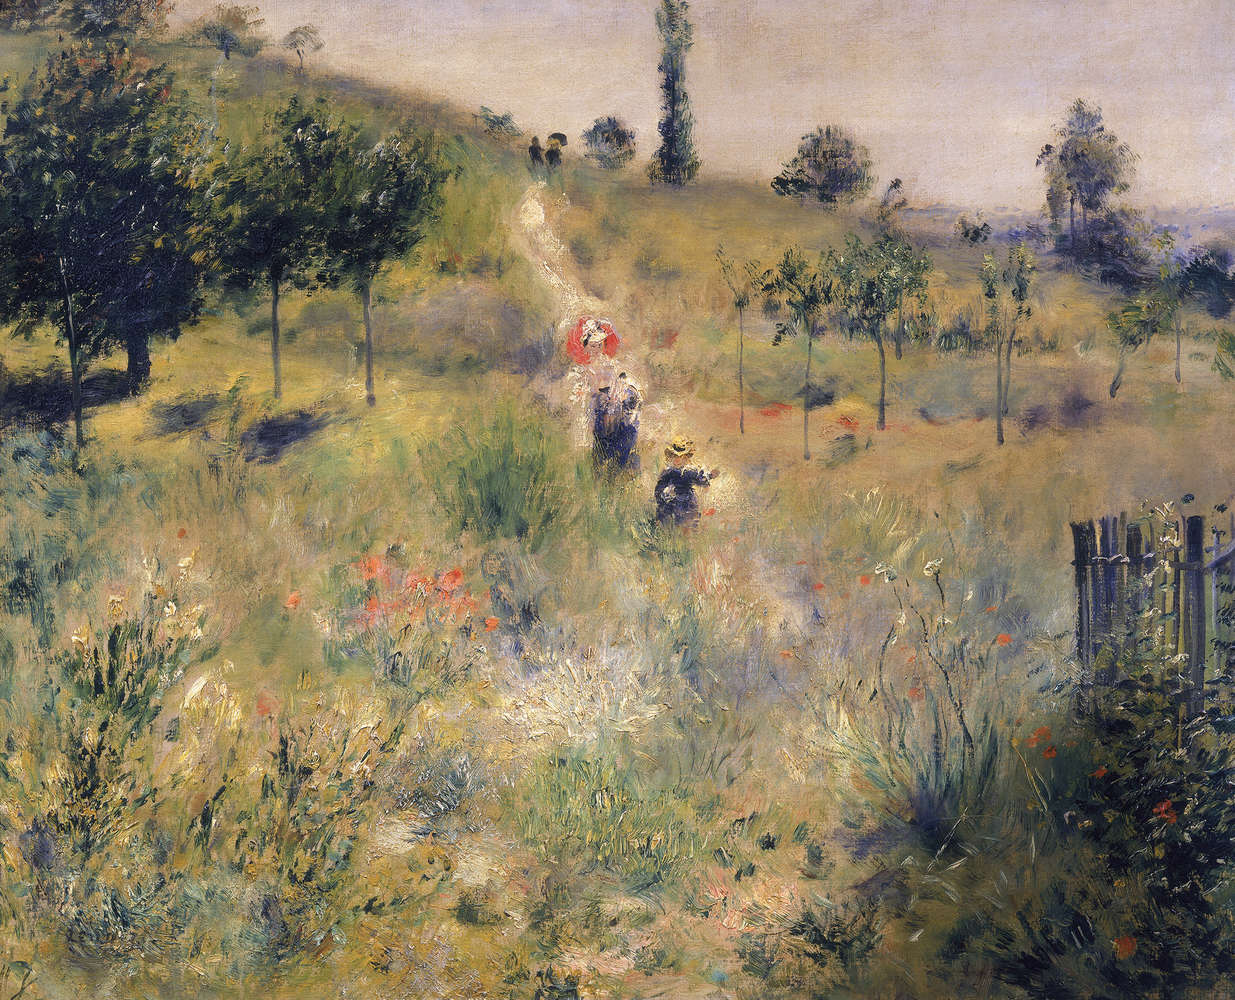             Muurschildering "Stijgend pad door hoog gras" van Pierre Auguste Renoir
        